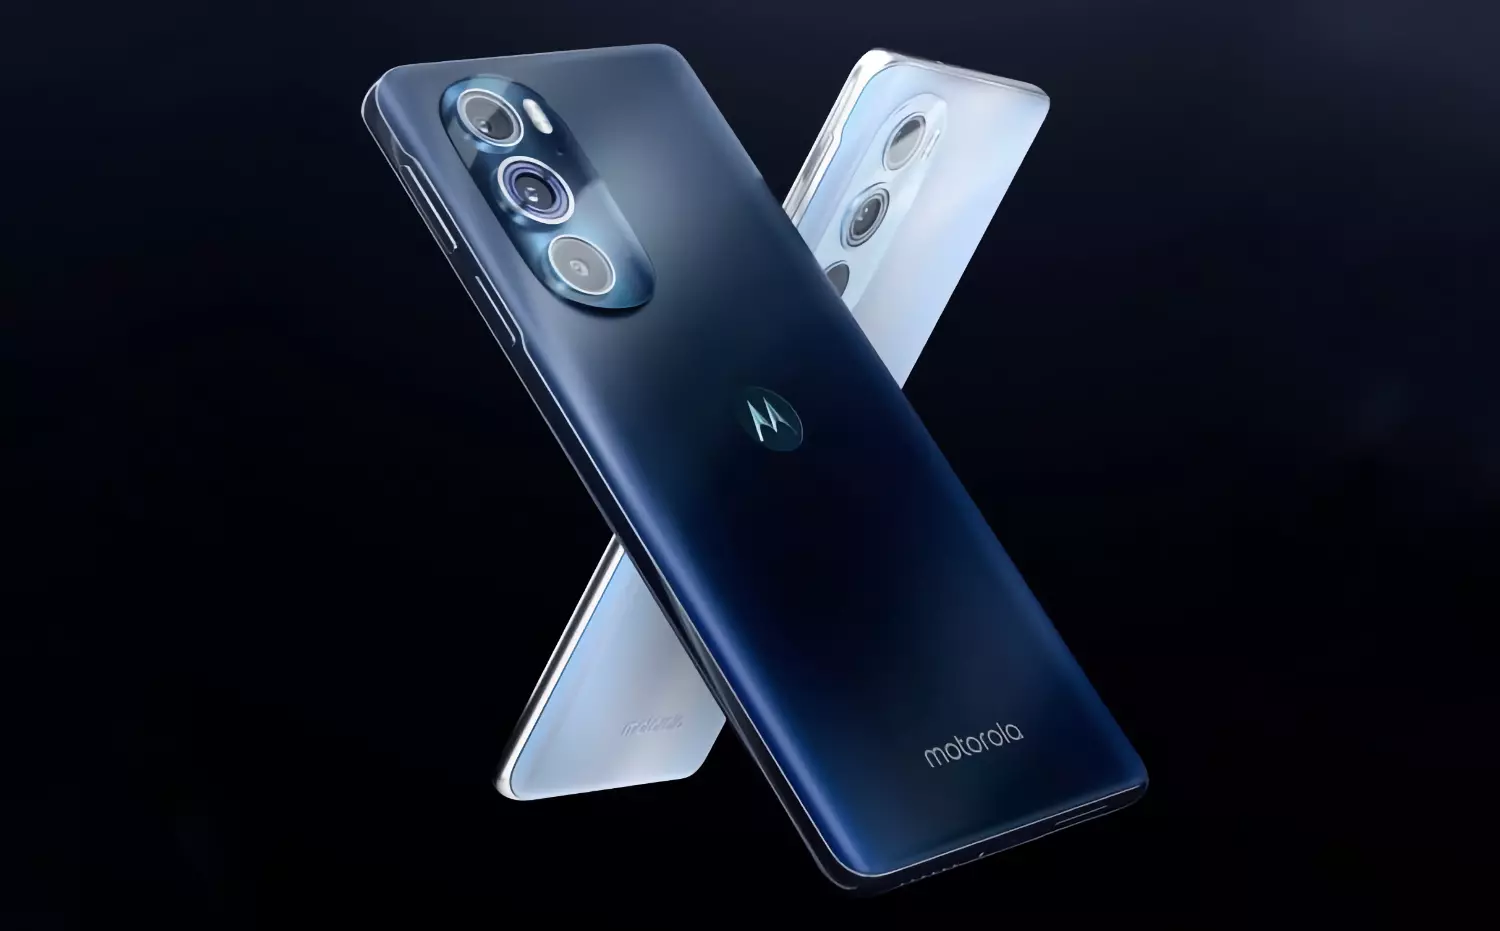 Motorola розкрила подробиці про камеру майбутнього флагмана X30 Pro – Український телекомунікаційний портал